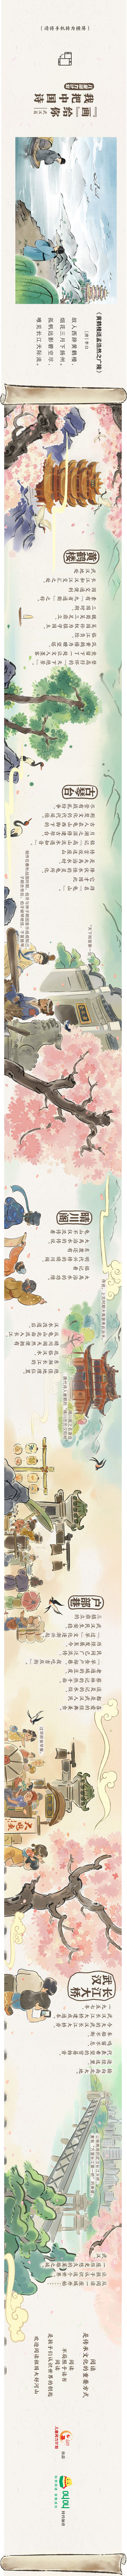 儿童阅力计划 | 我把中国诗“画”给你——阅读武汉